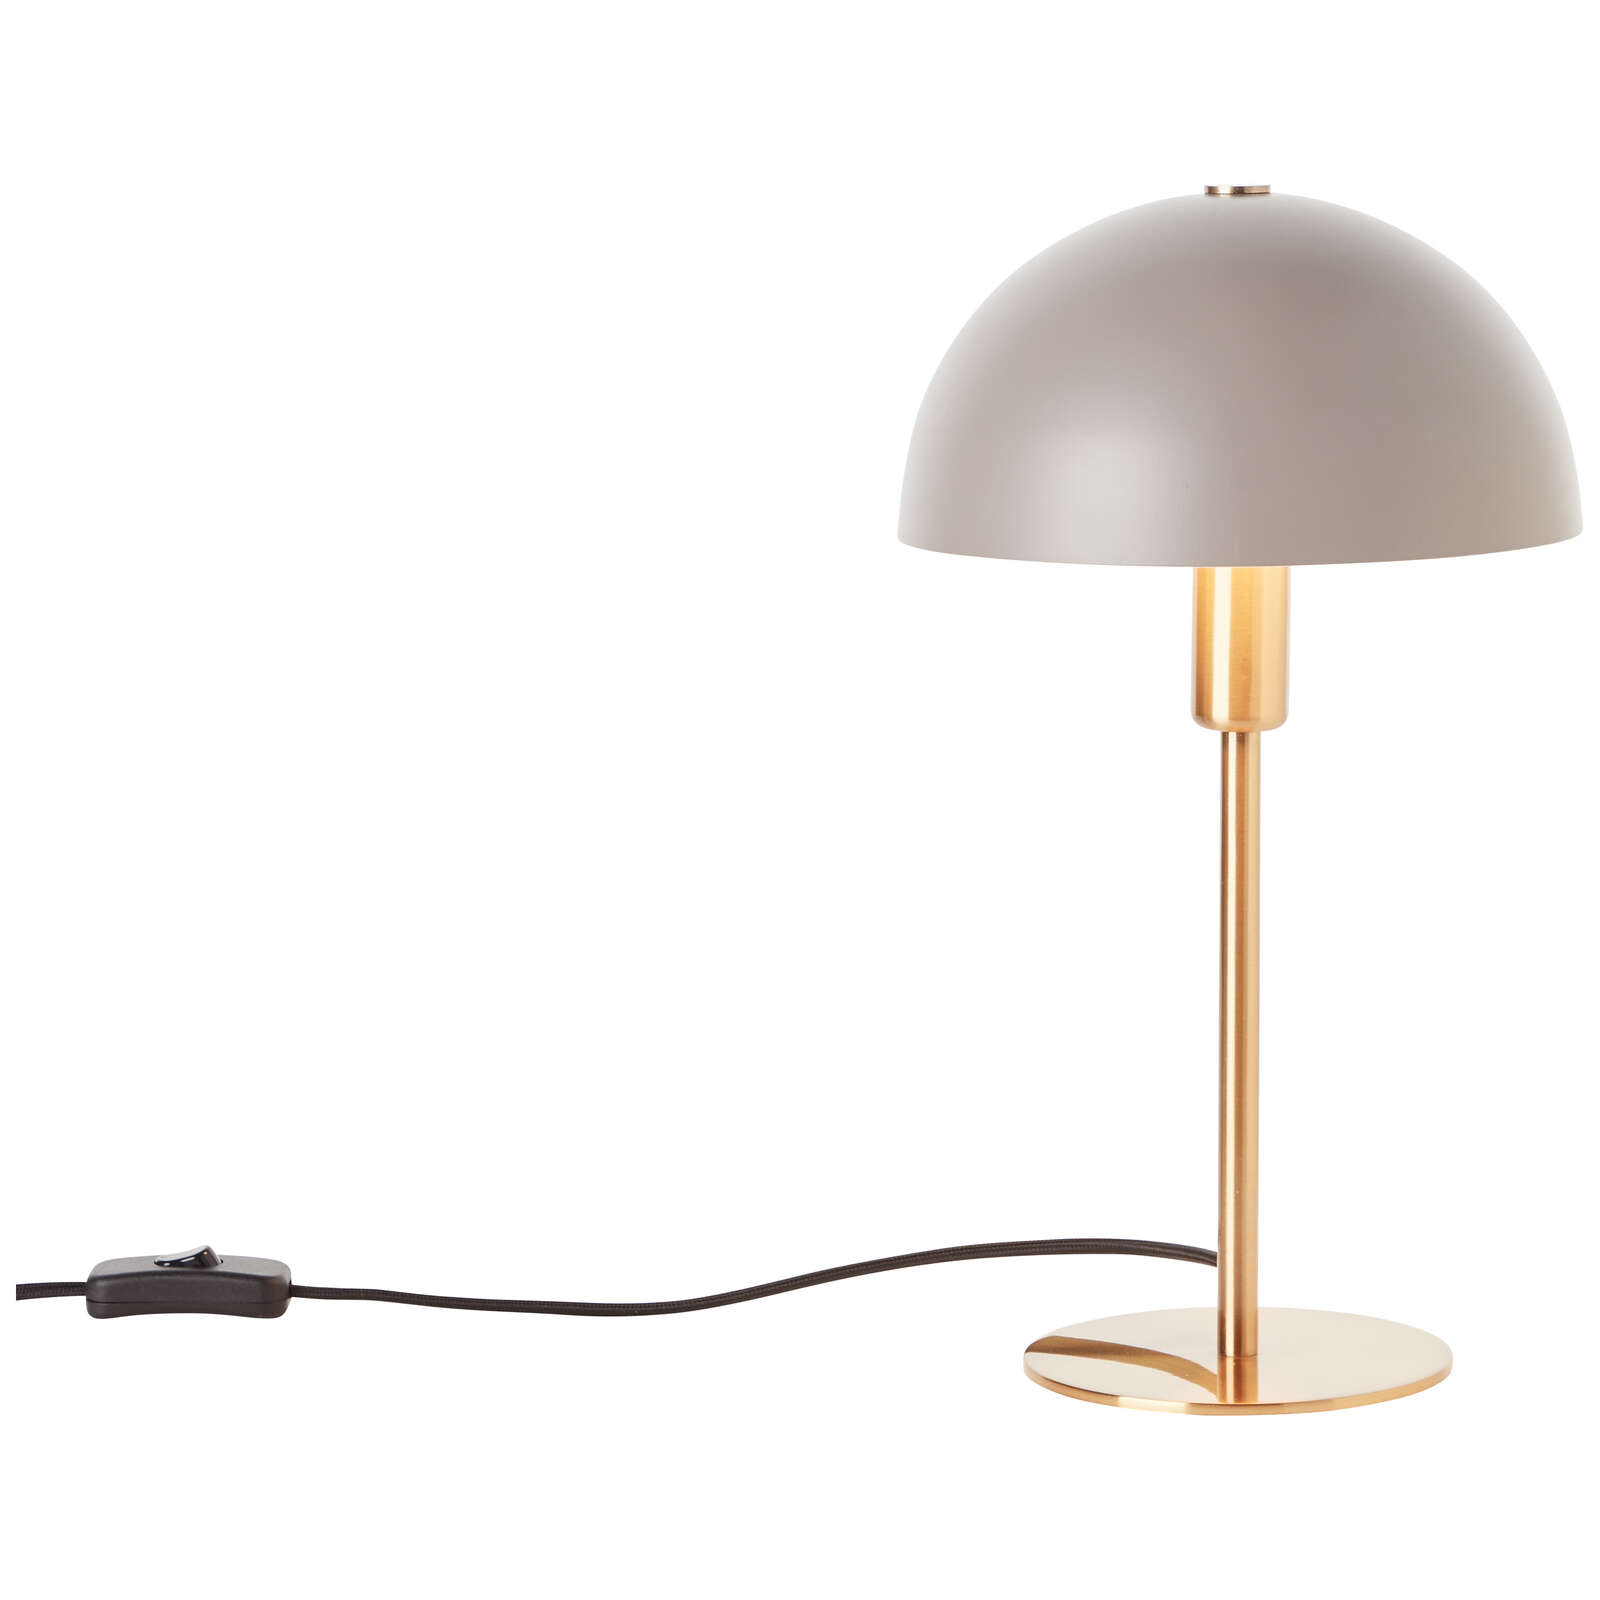             Lampe de table en métal - Lasse 1 - Gold
        